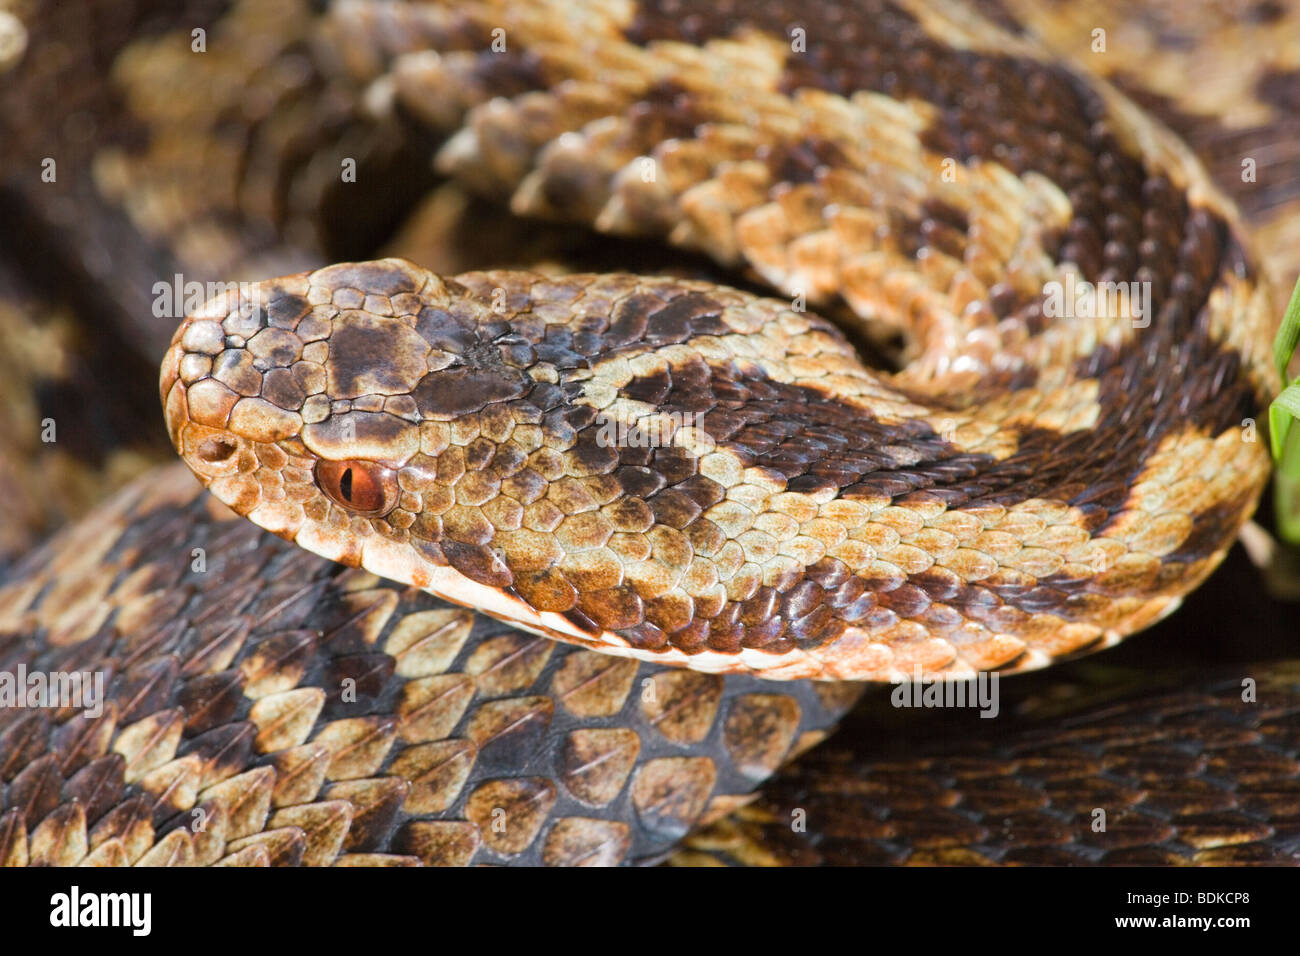 Addierer oder Norther Viper (Vipera berus). Charakteristische Markierungen auf den Kopf einer weiblichen Schlange dargestellt. Stockfoto